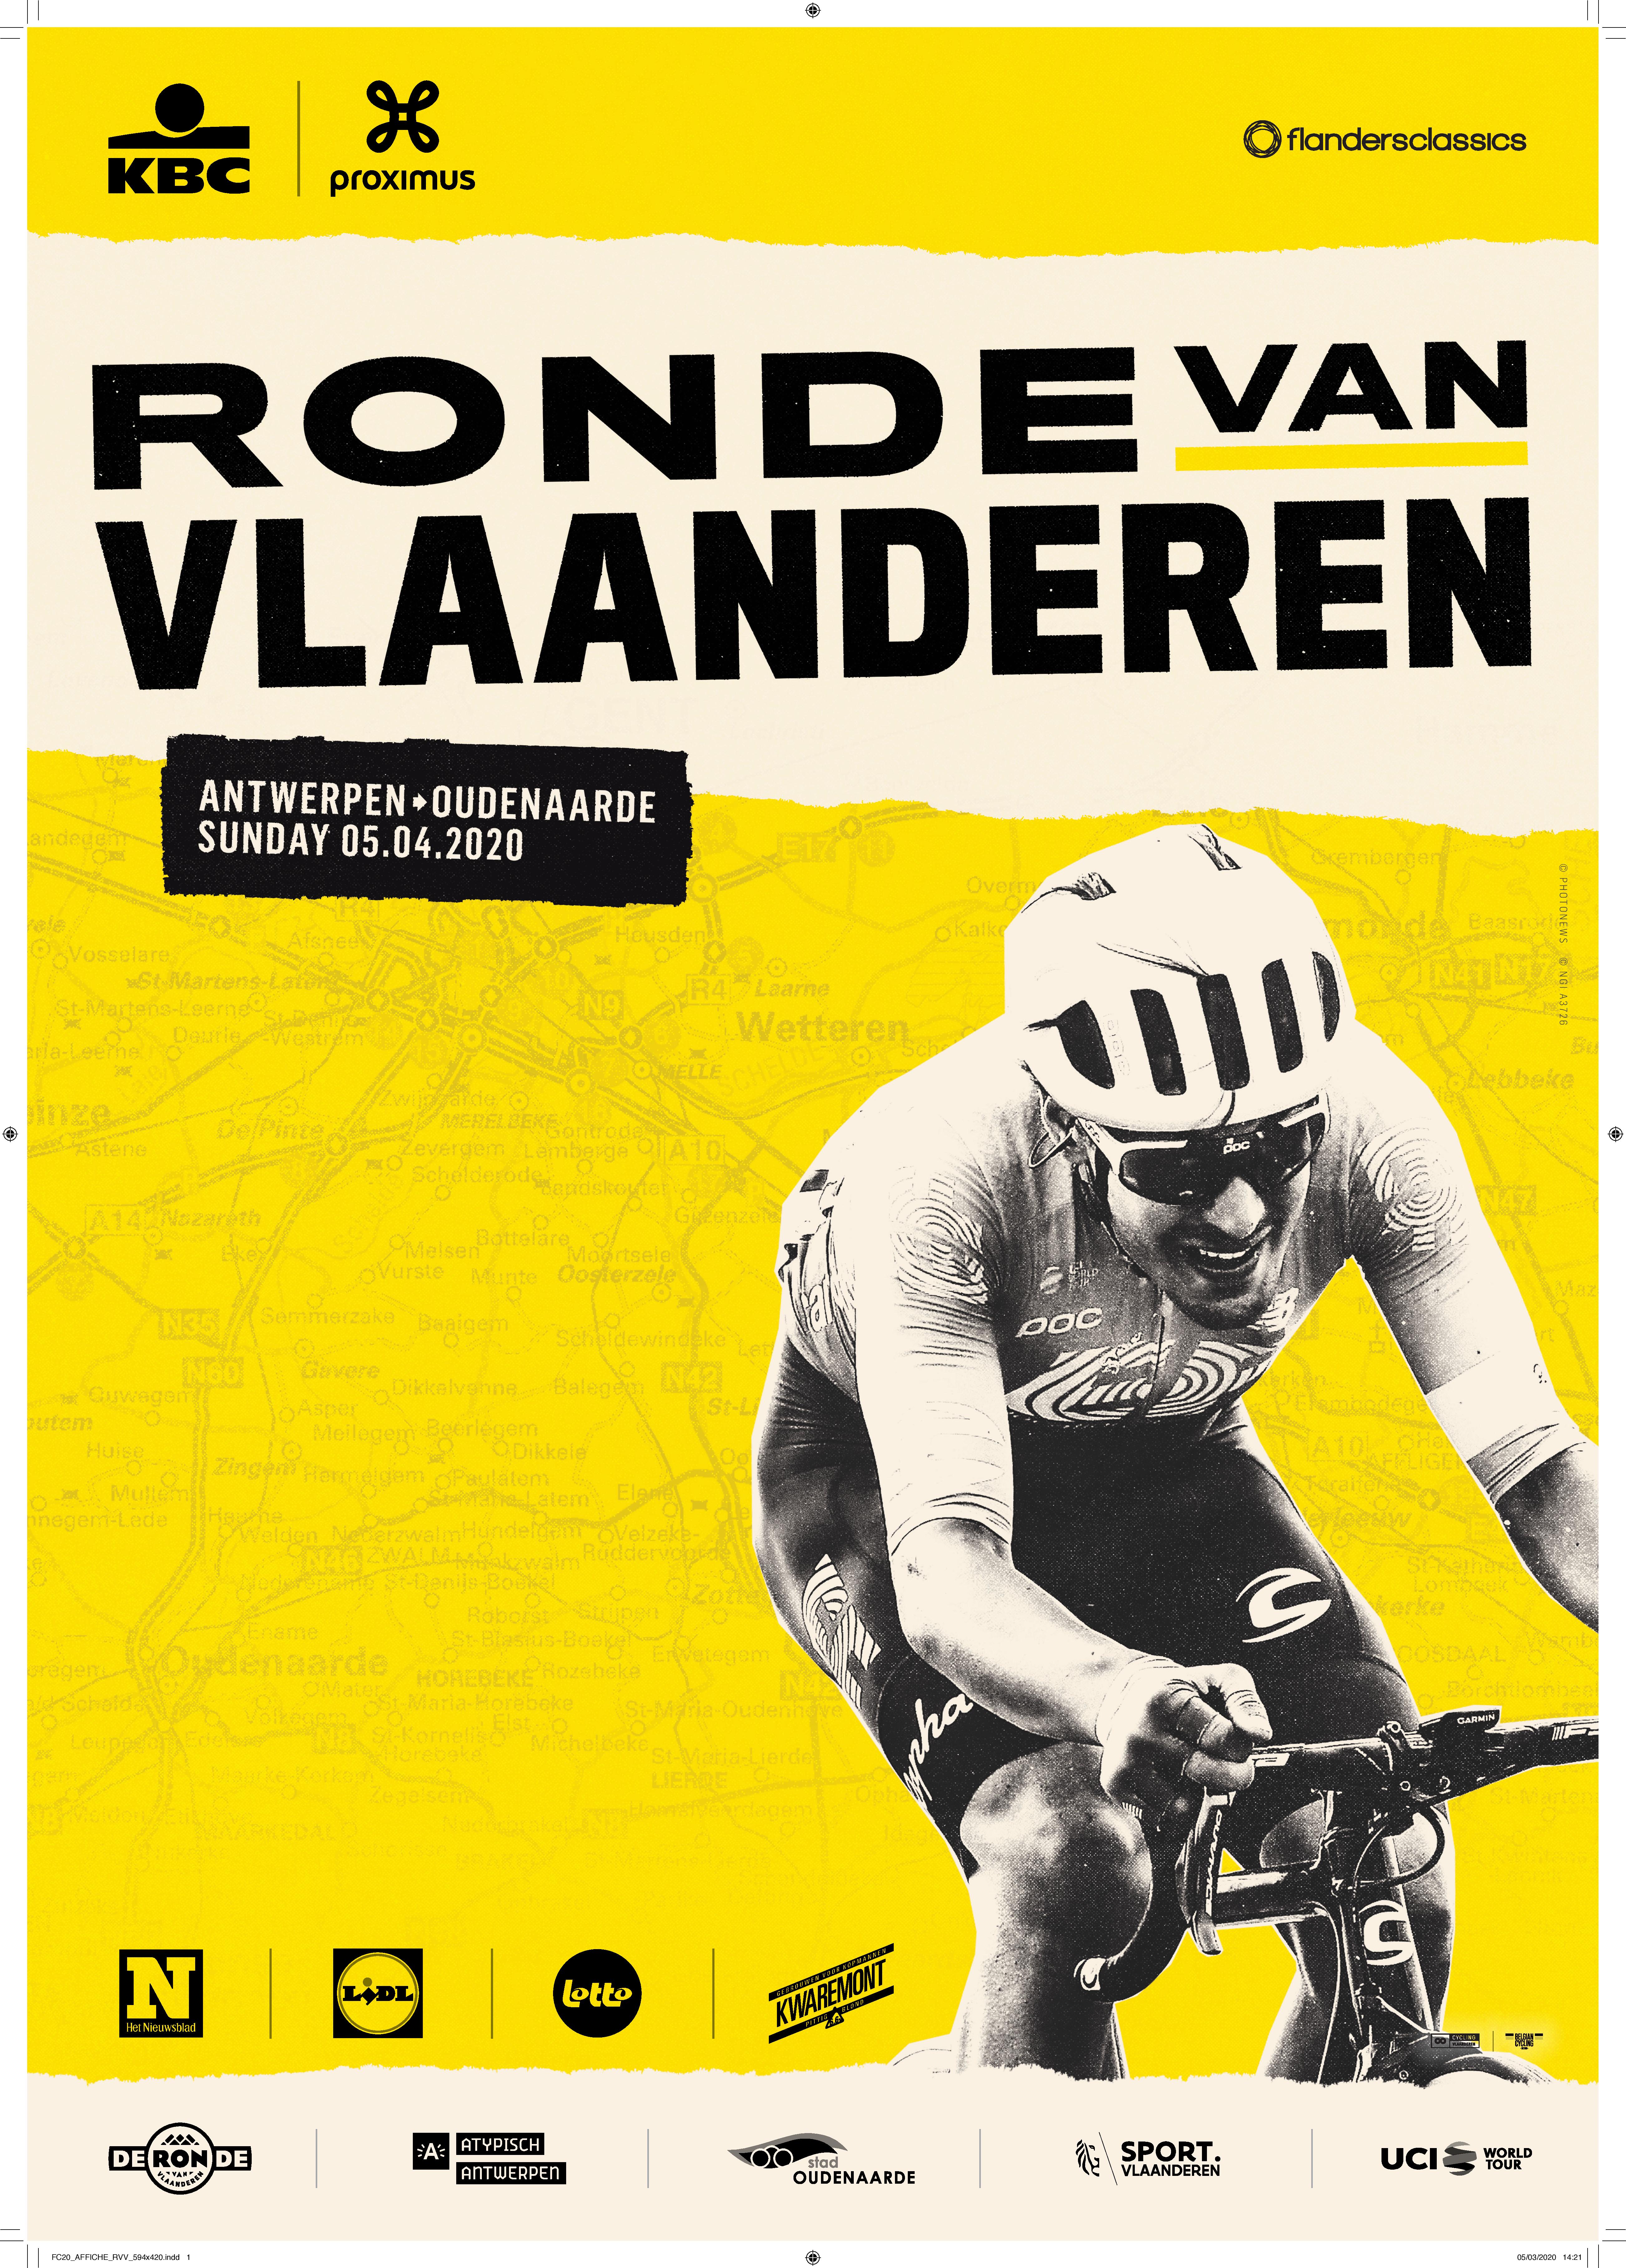 De Ronde van Vlaanderen: een monument